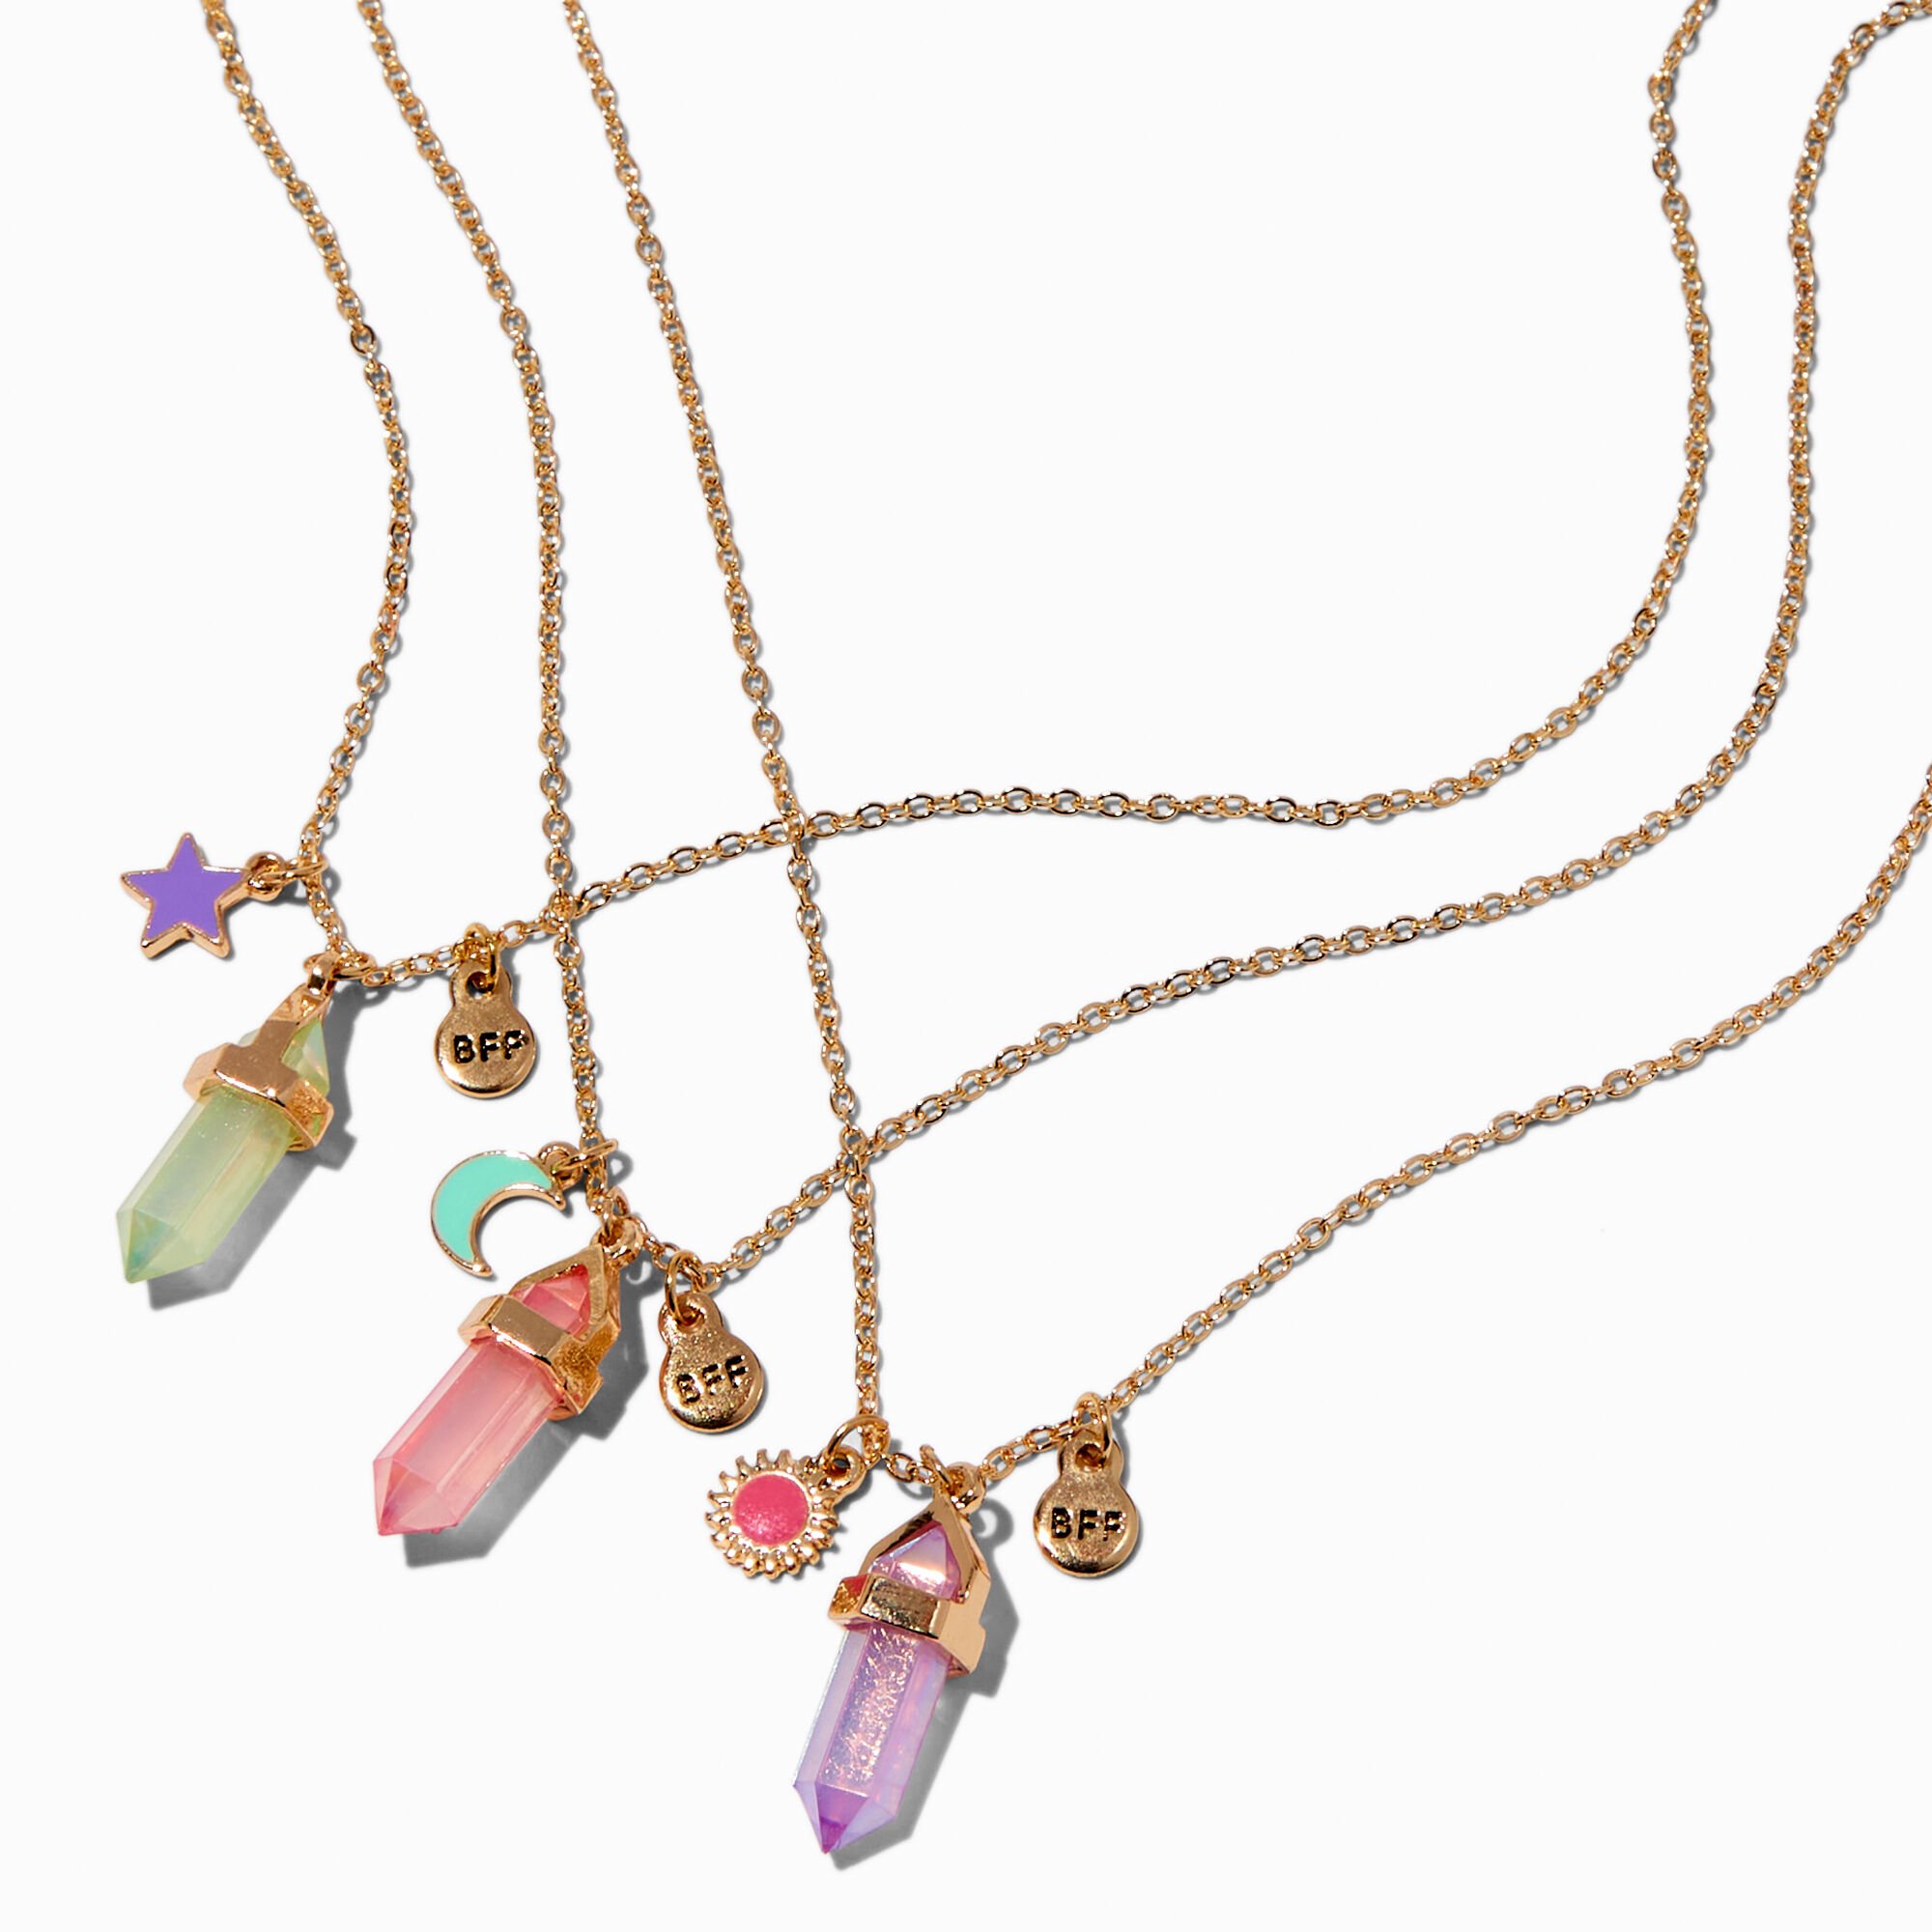 View Claires Best Friends Mystical Gem Celestial Pendant Necklaces 3 Pack Gold information